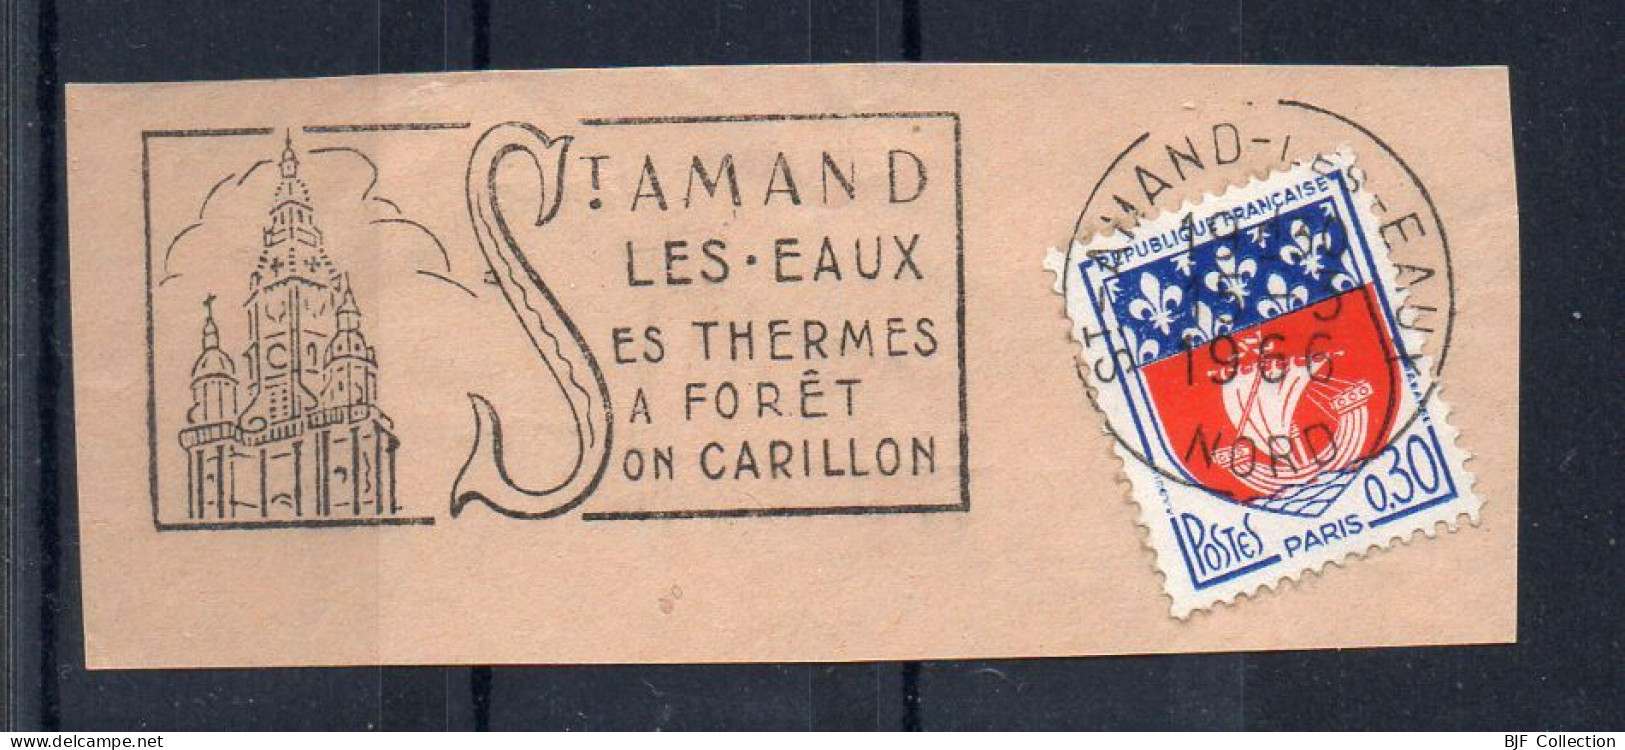 Flamme Illustrée : (59) SAINT-AMAND-LES-EAUX – 15/03/1966 (Flamme Sur Fragment) - Mechanical Postmarks (Advertisement)